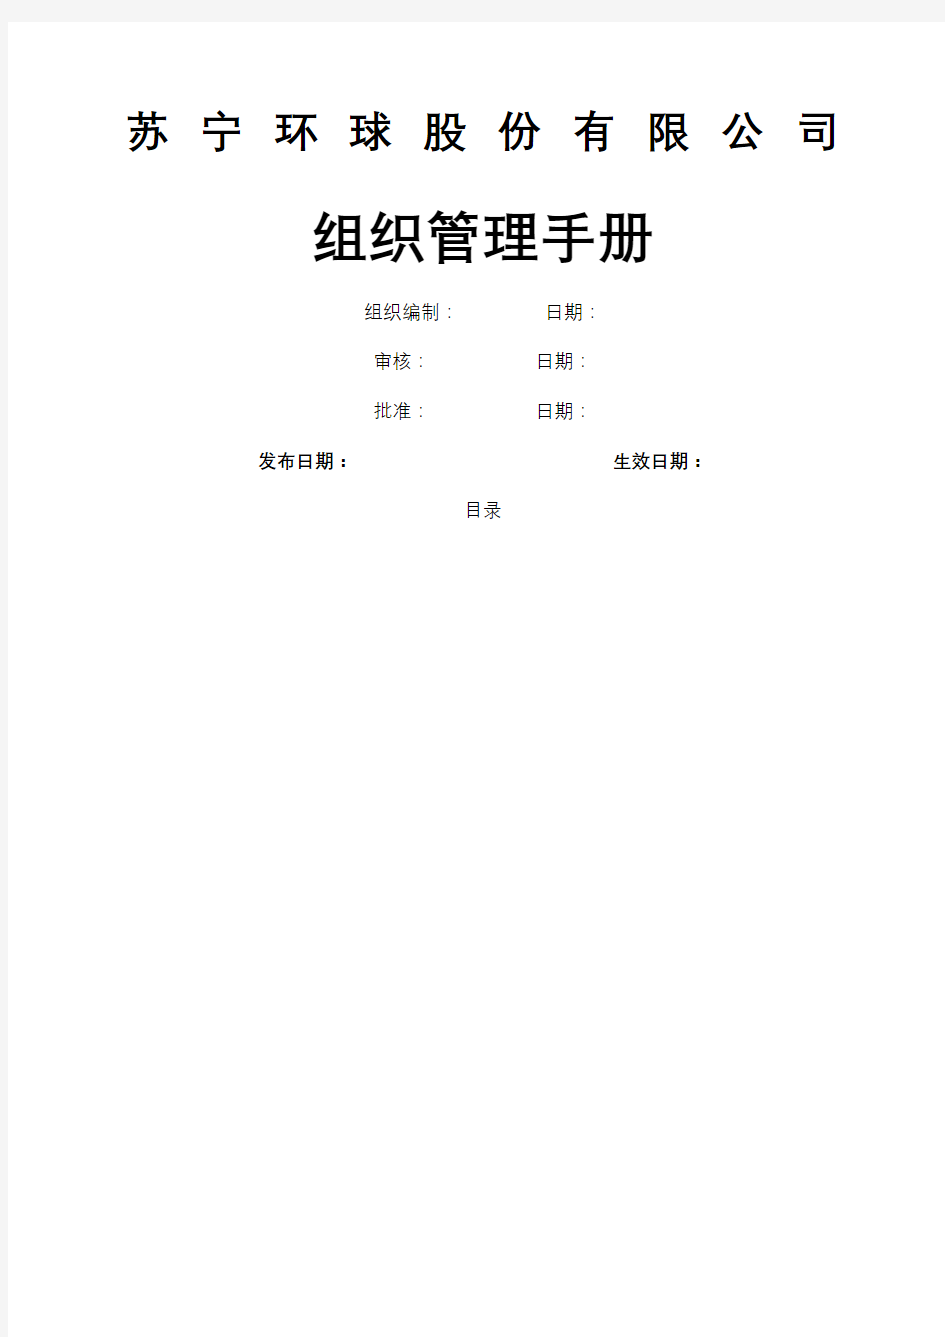 苏宁环球组织管理手册